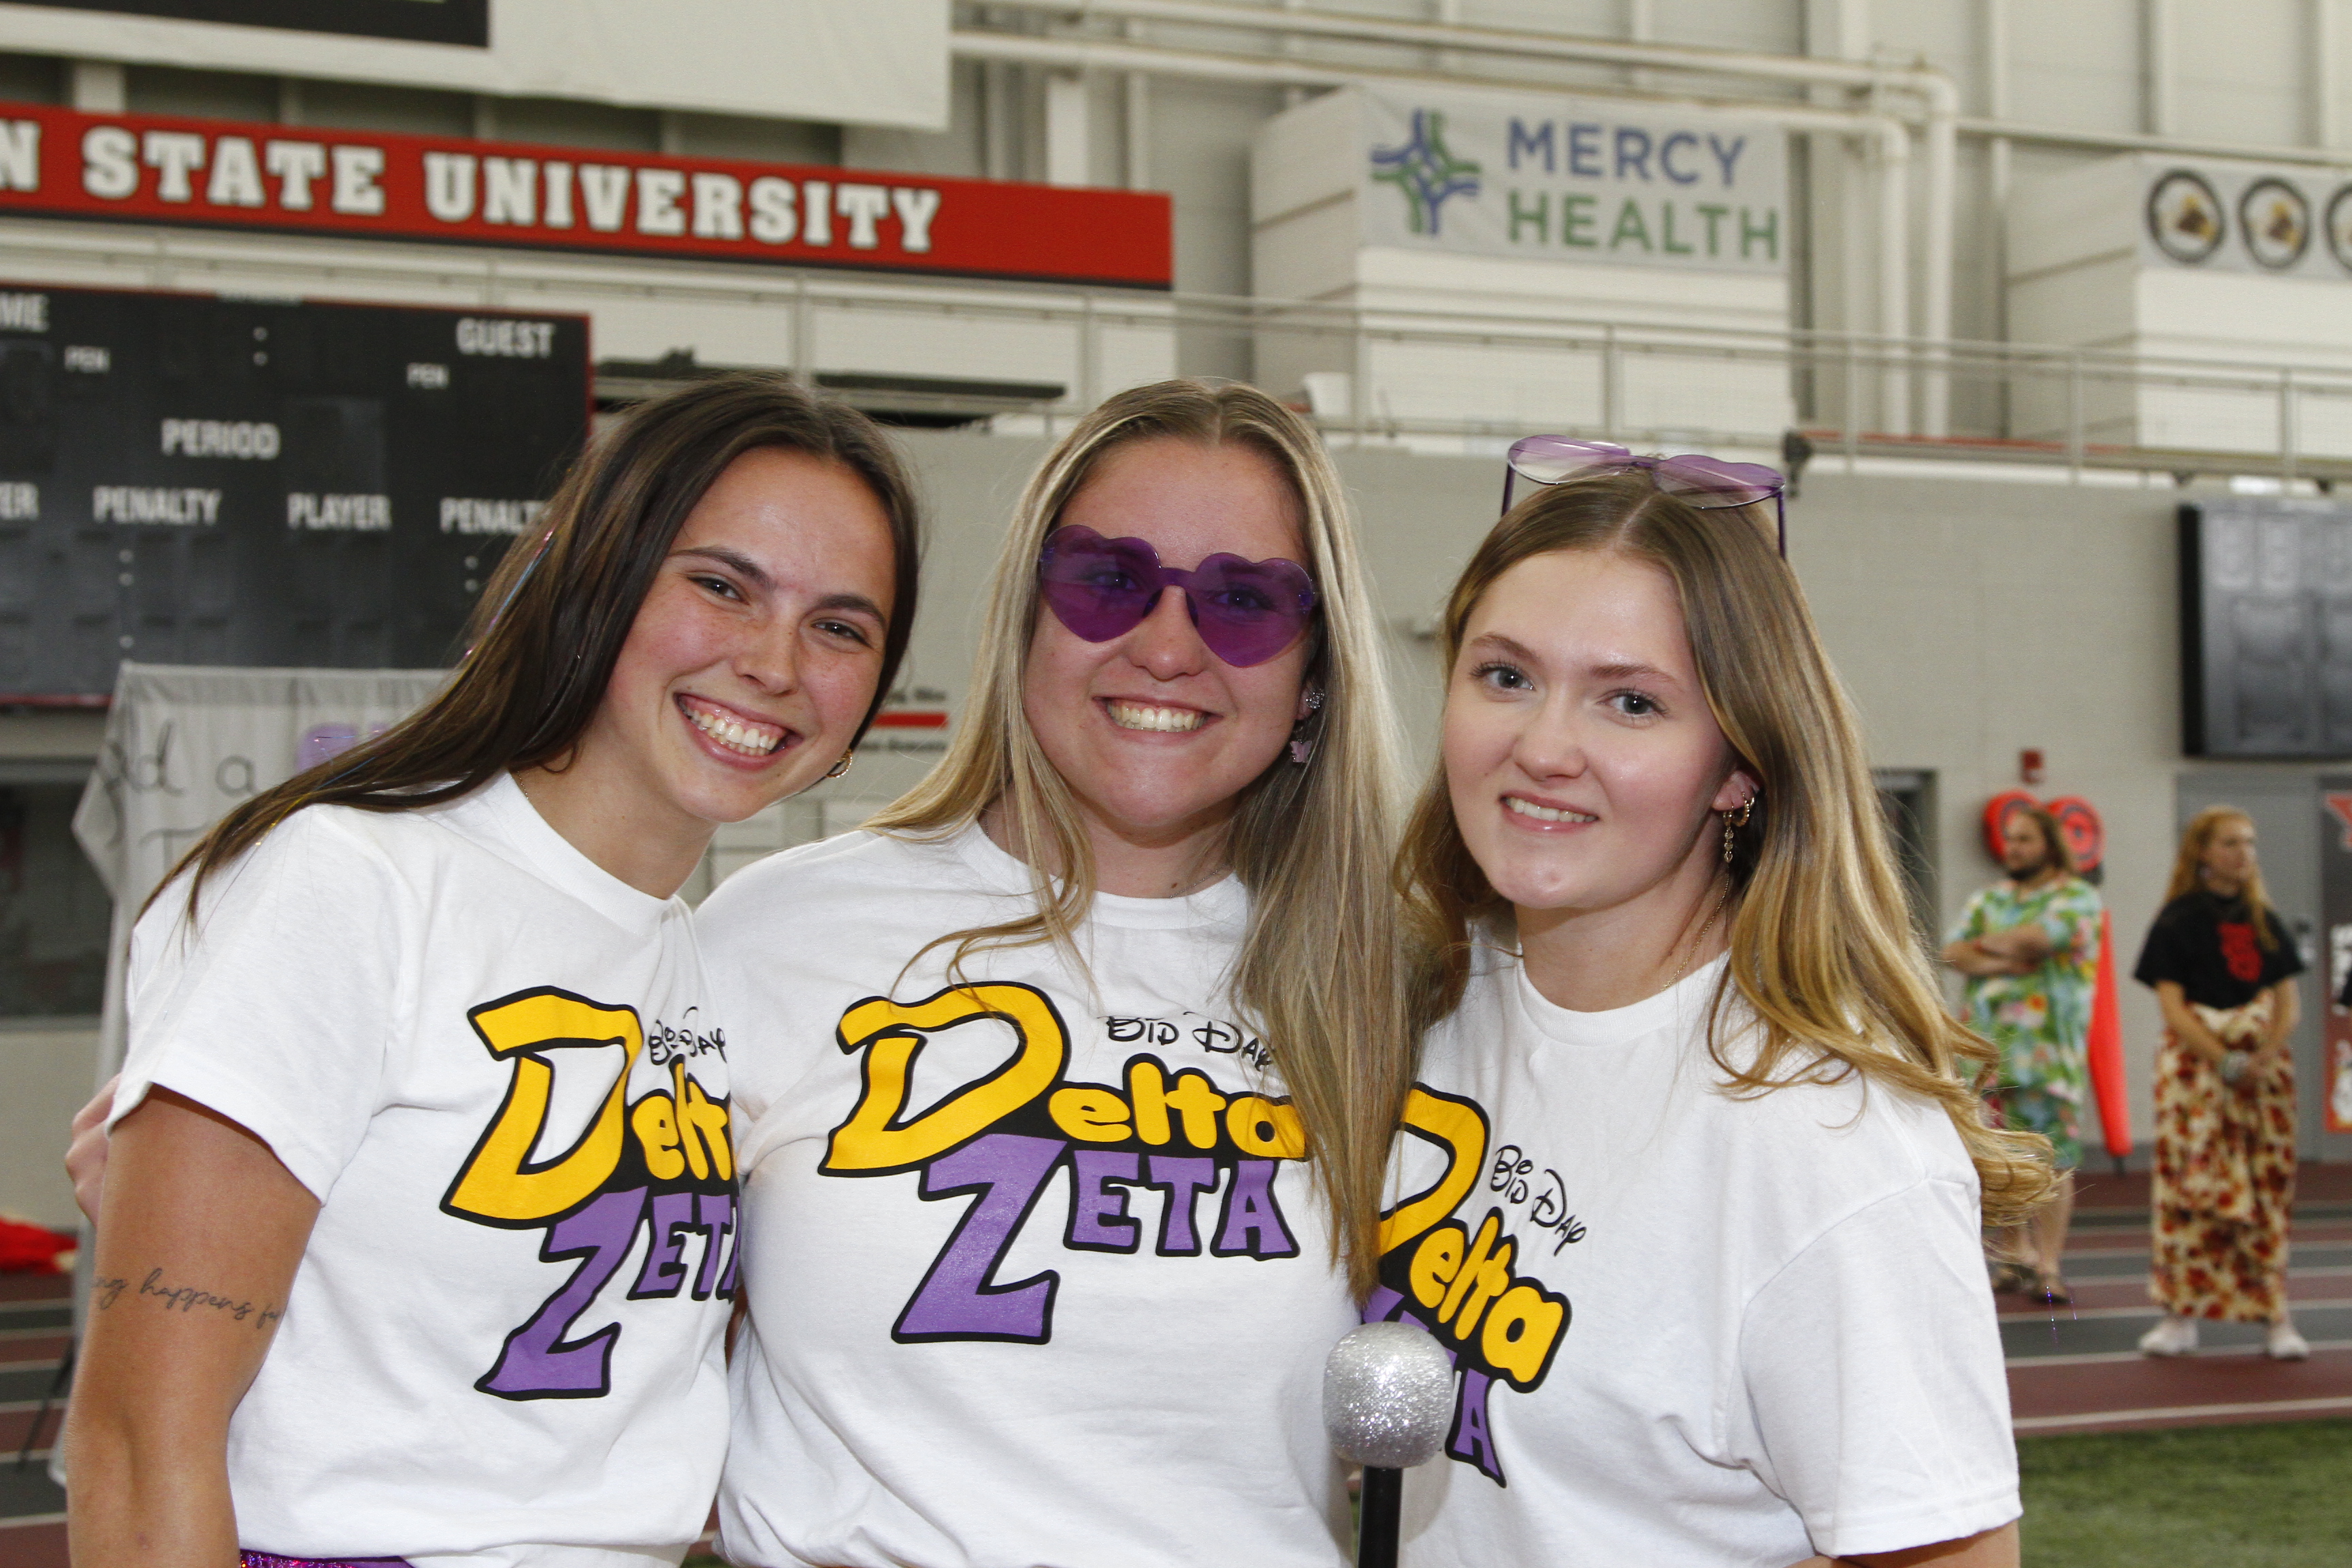 3 Girls from Delta Zeta